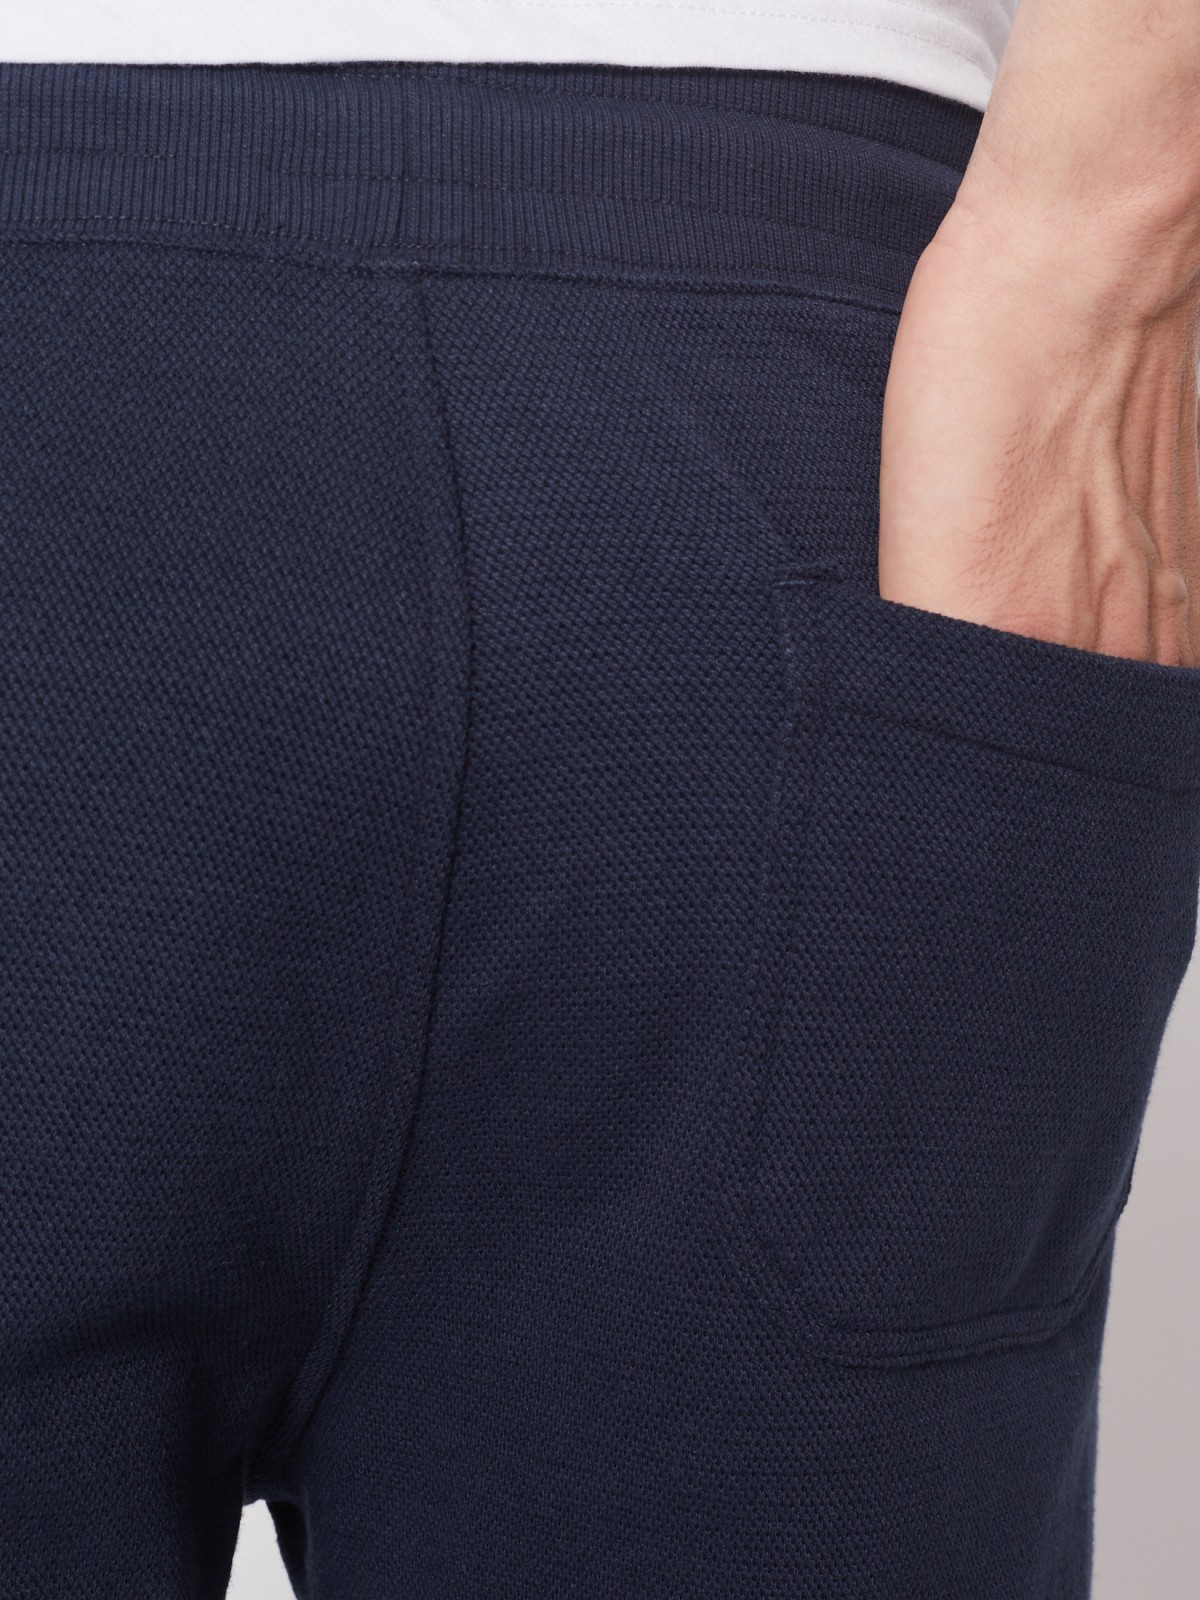 Спортивные брюки-джоггеры zolla 21231762F012, цвет синий, размер S - фото 6